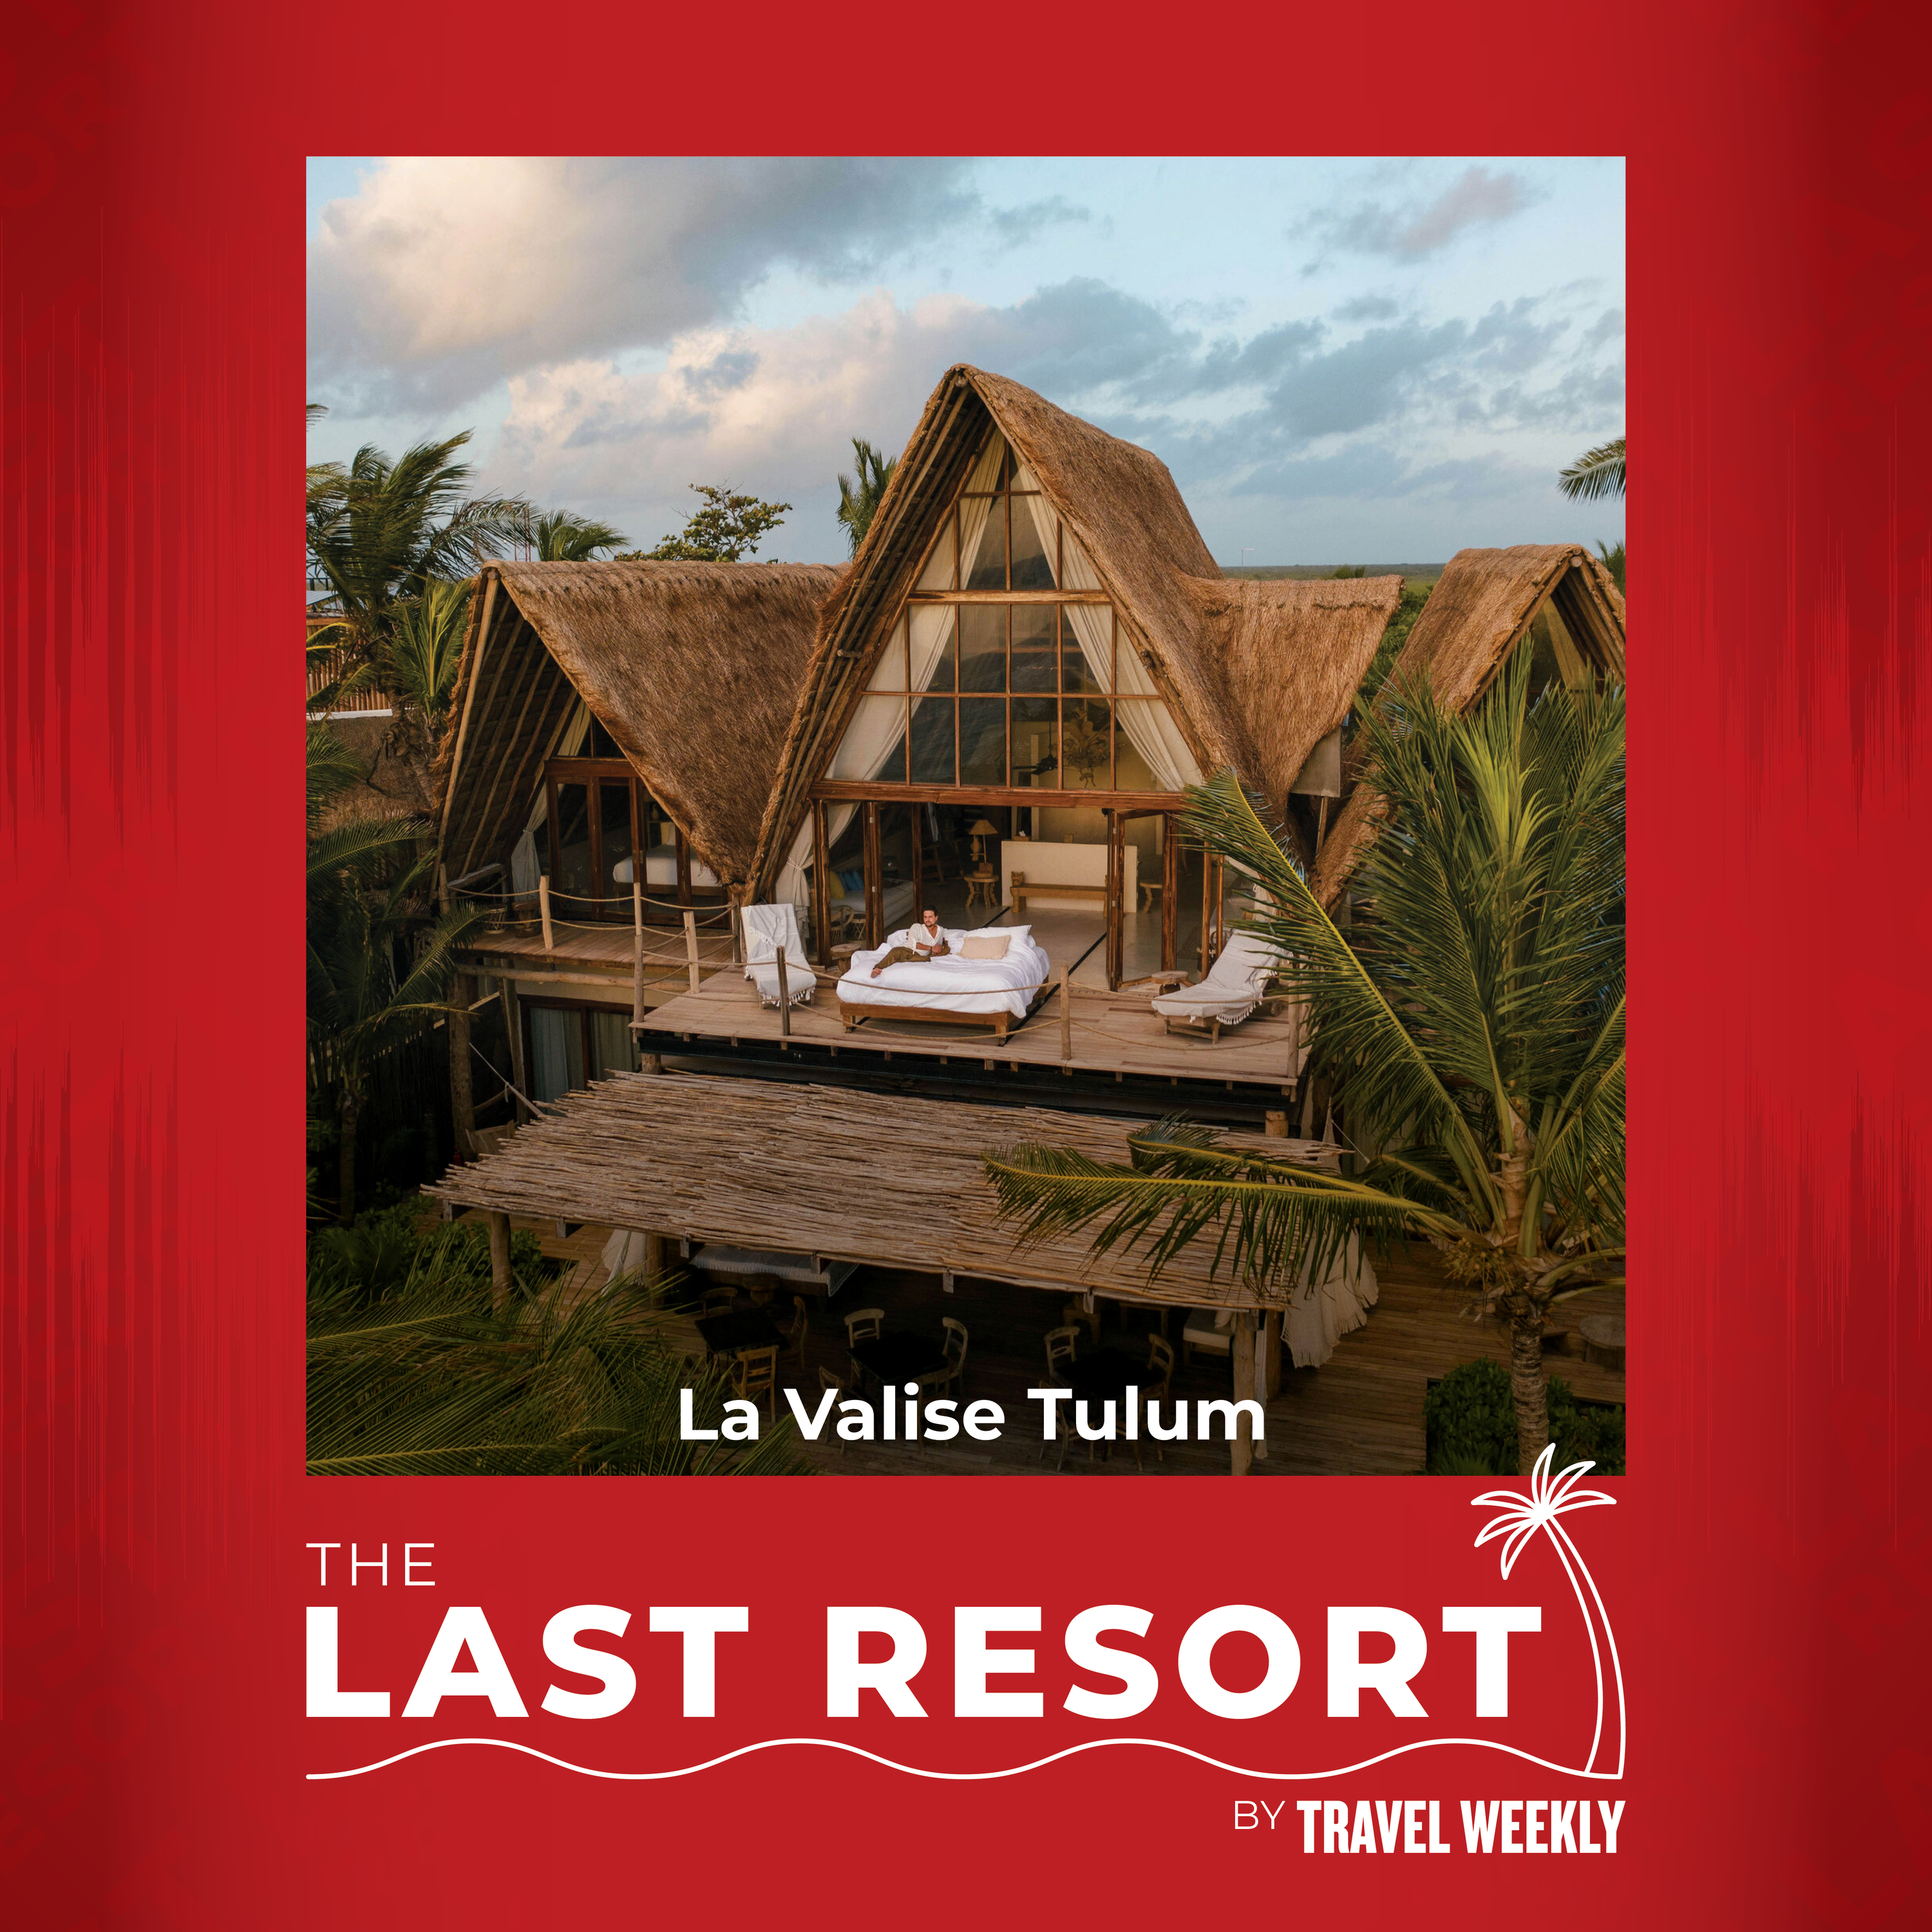 The Last Resort: La Valise Tulum